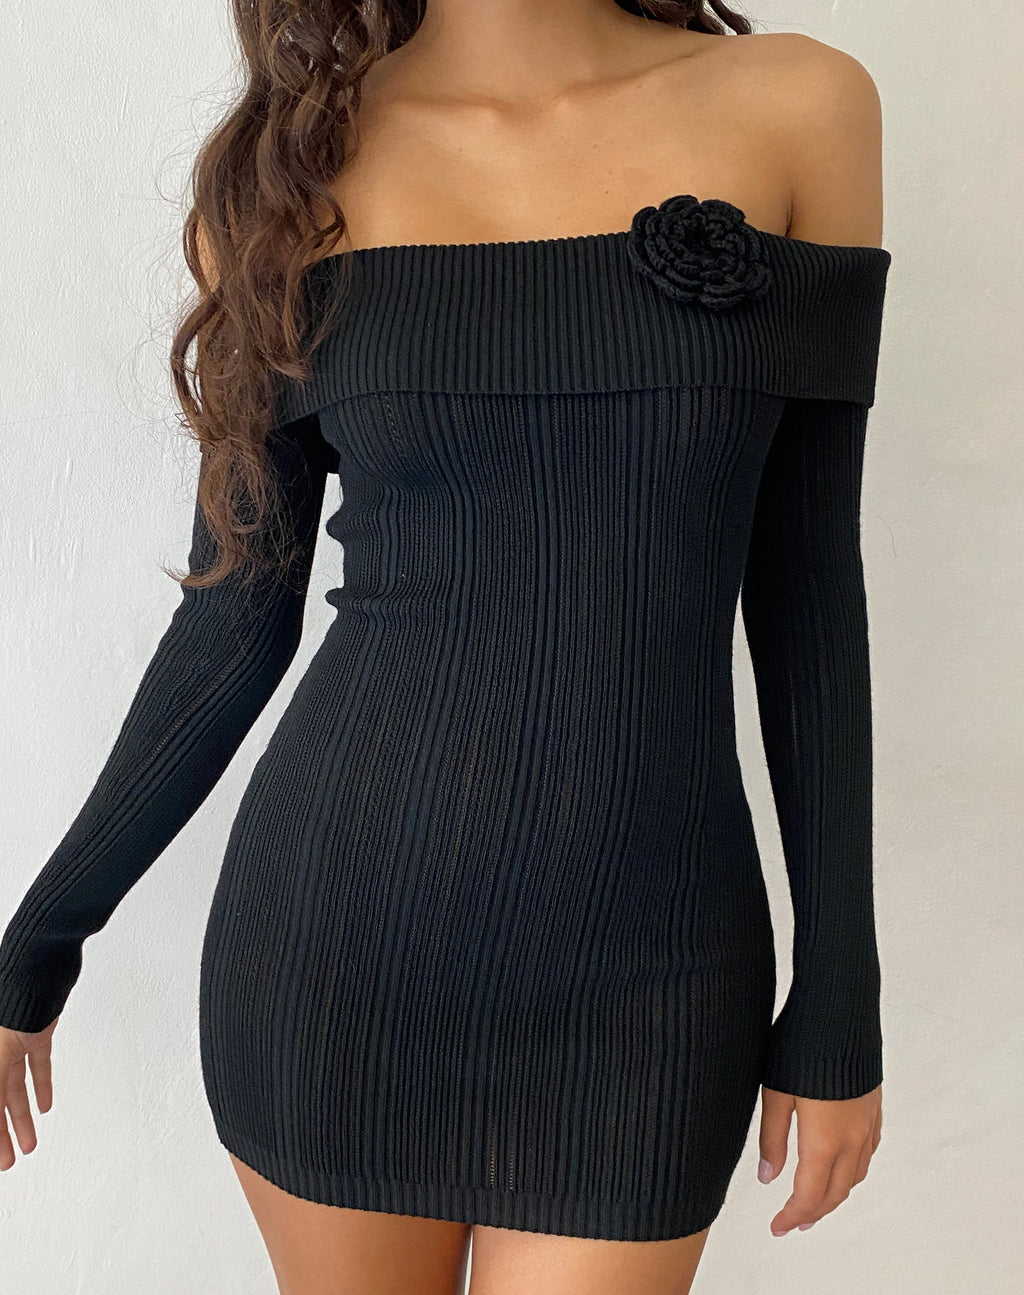 Mirabel - Mini robe bardot en maille noire avec rosette